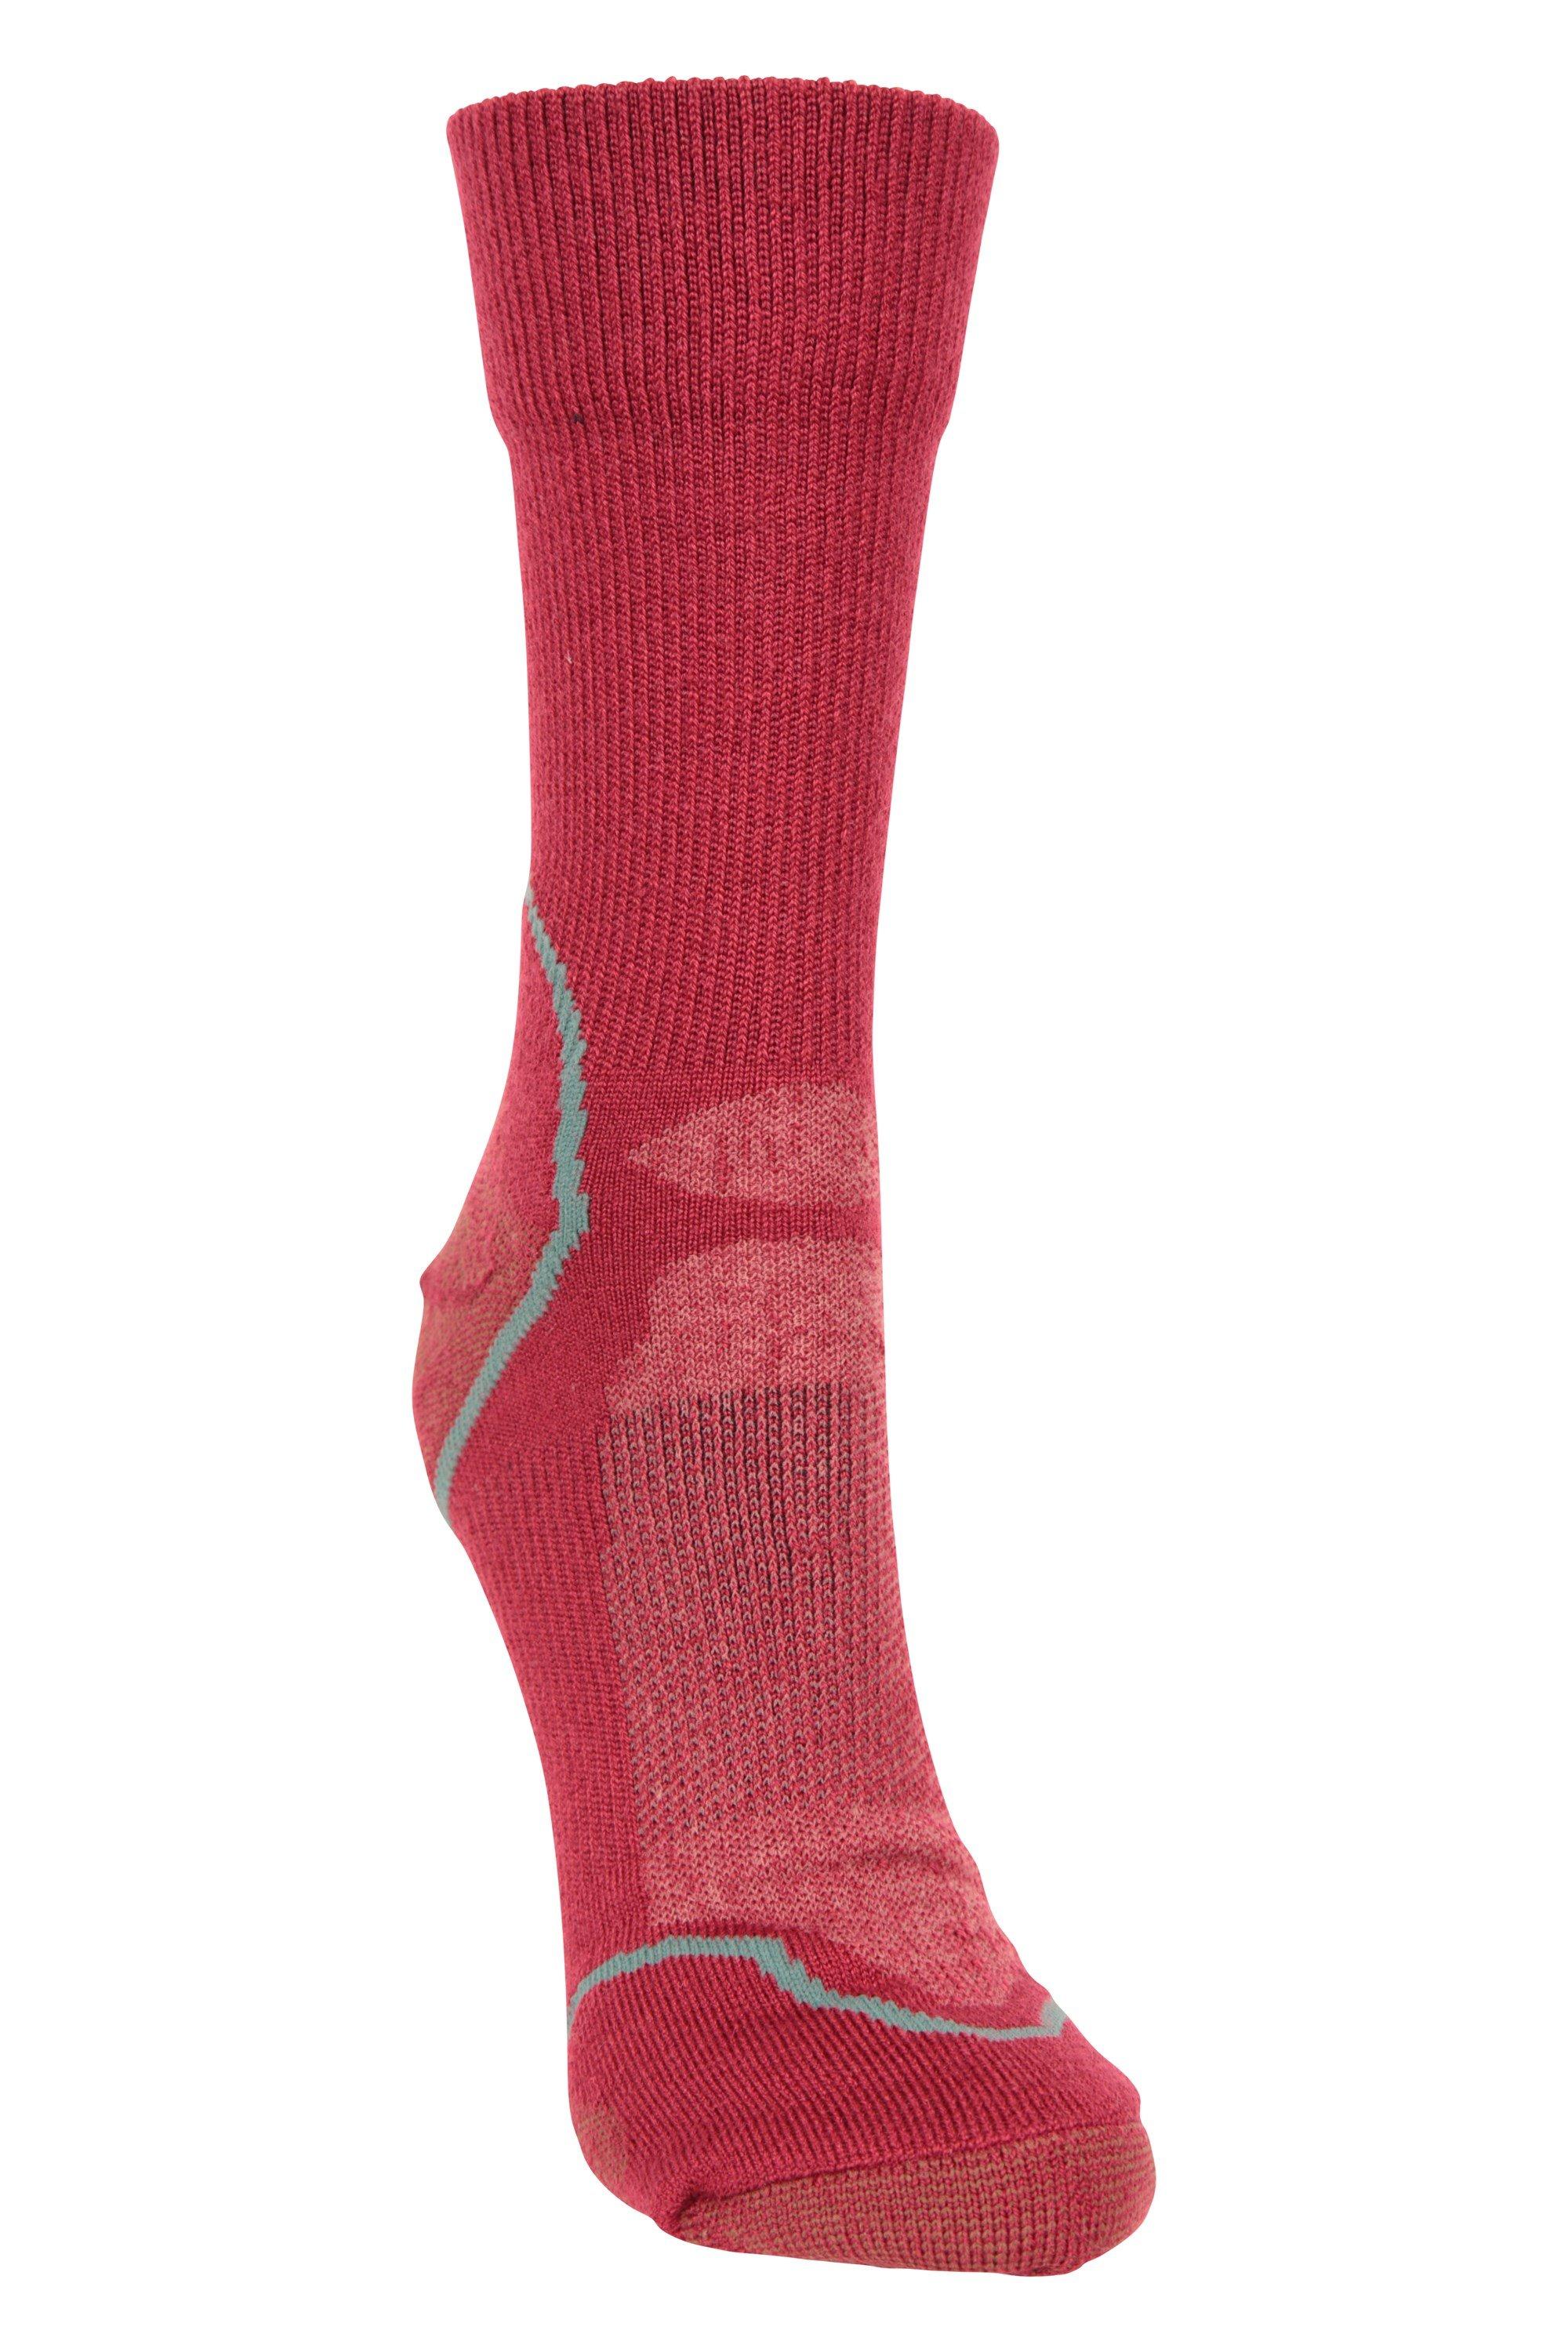 Merino Hiker  Quarter Length Socks  Sports Sock